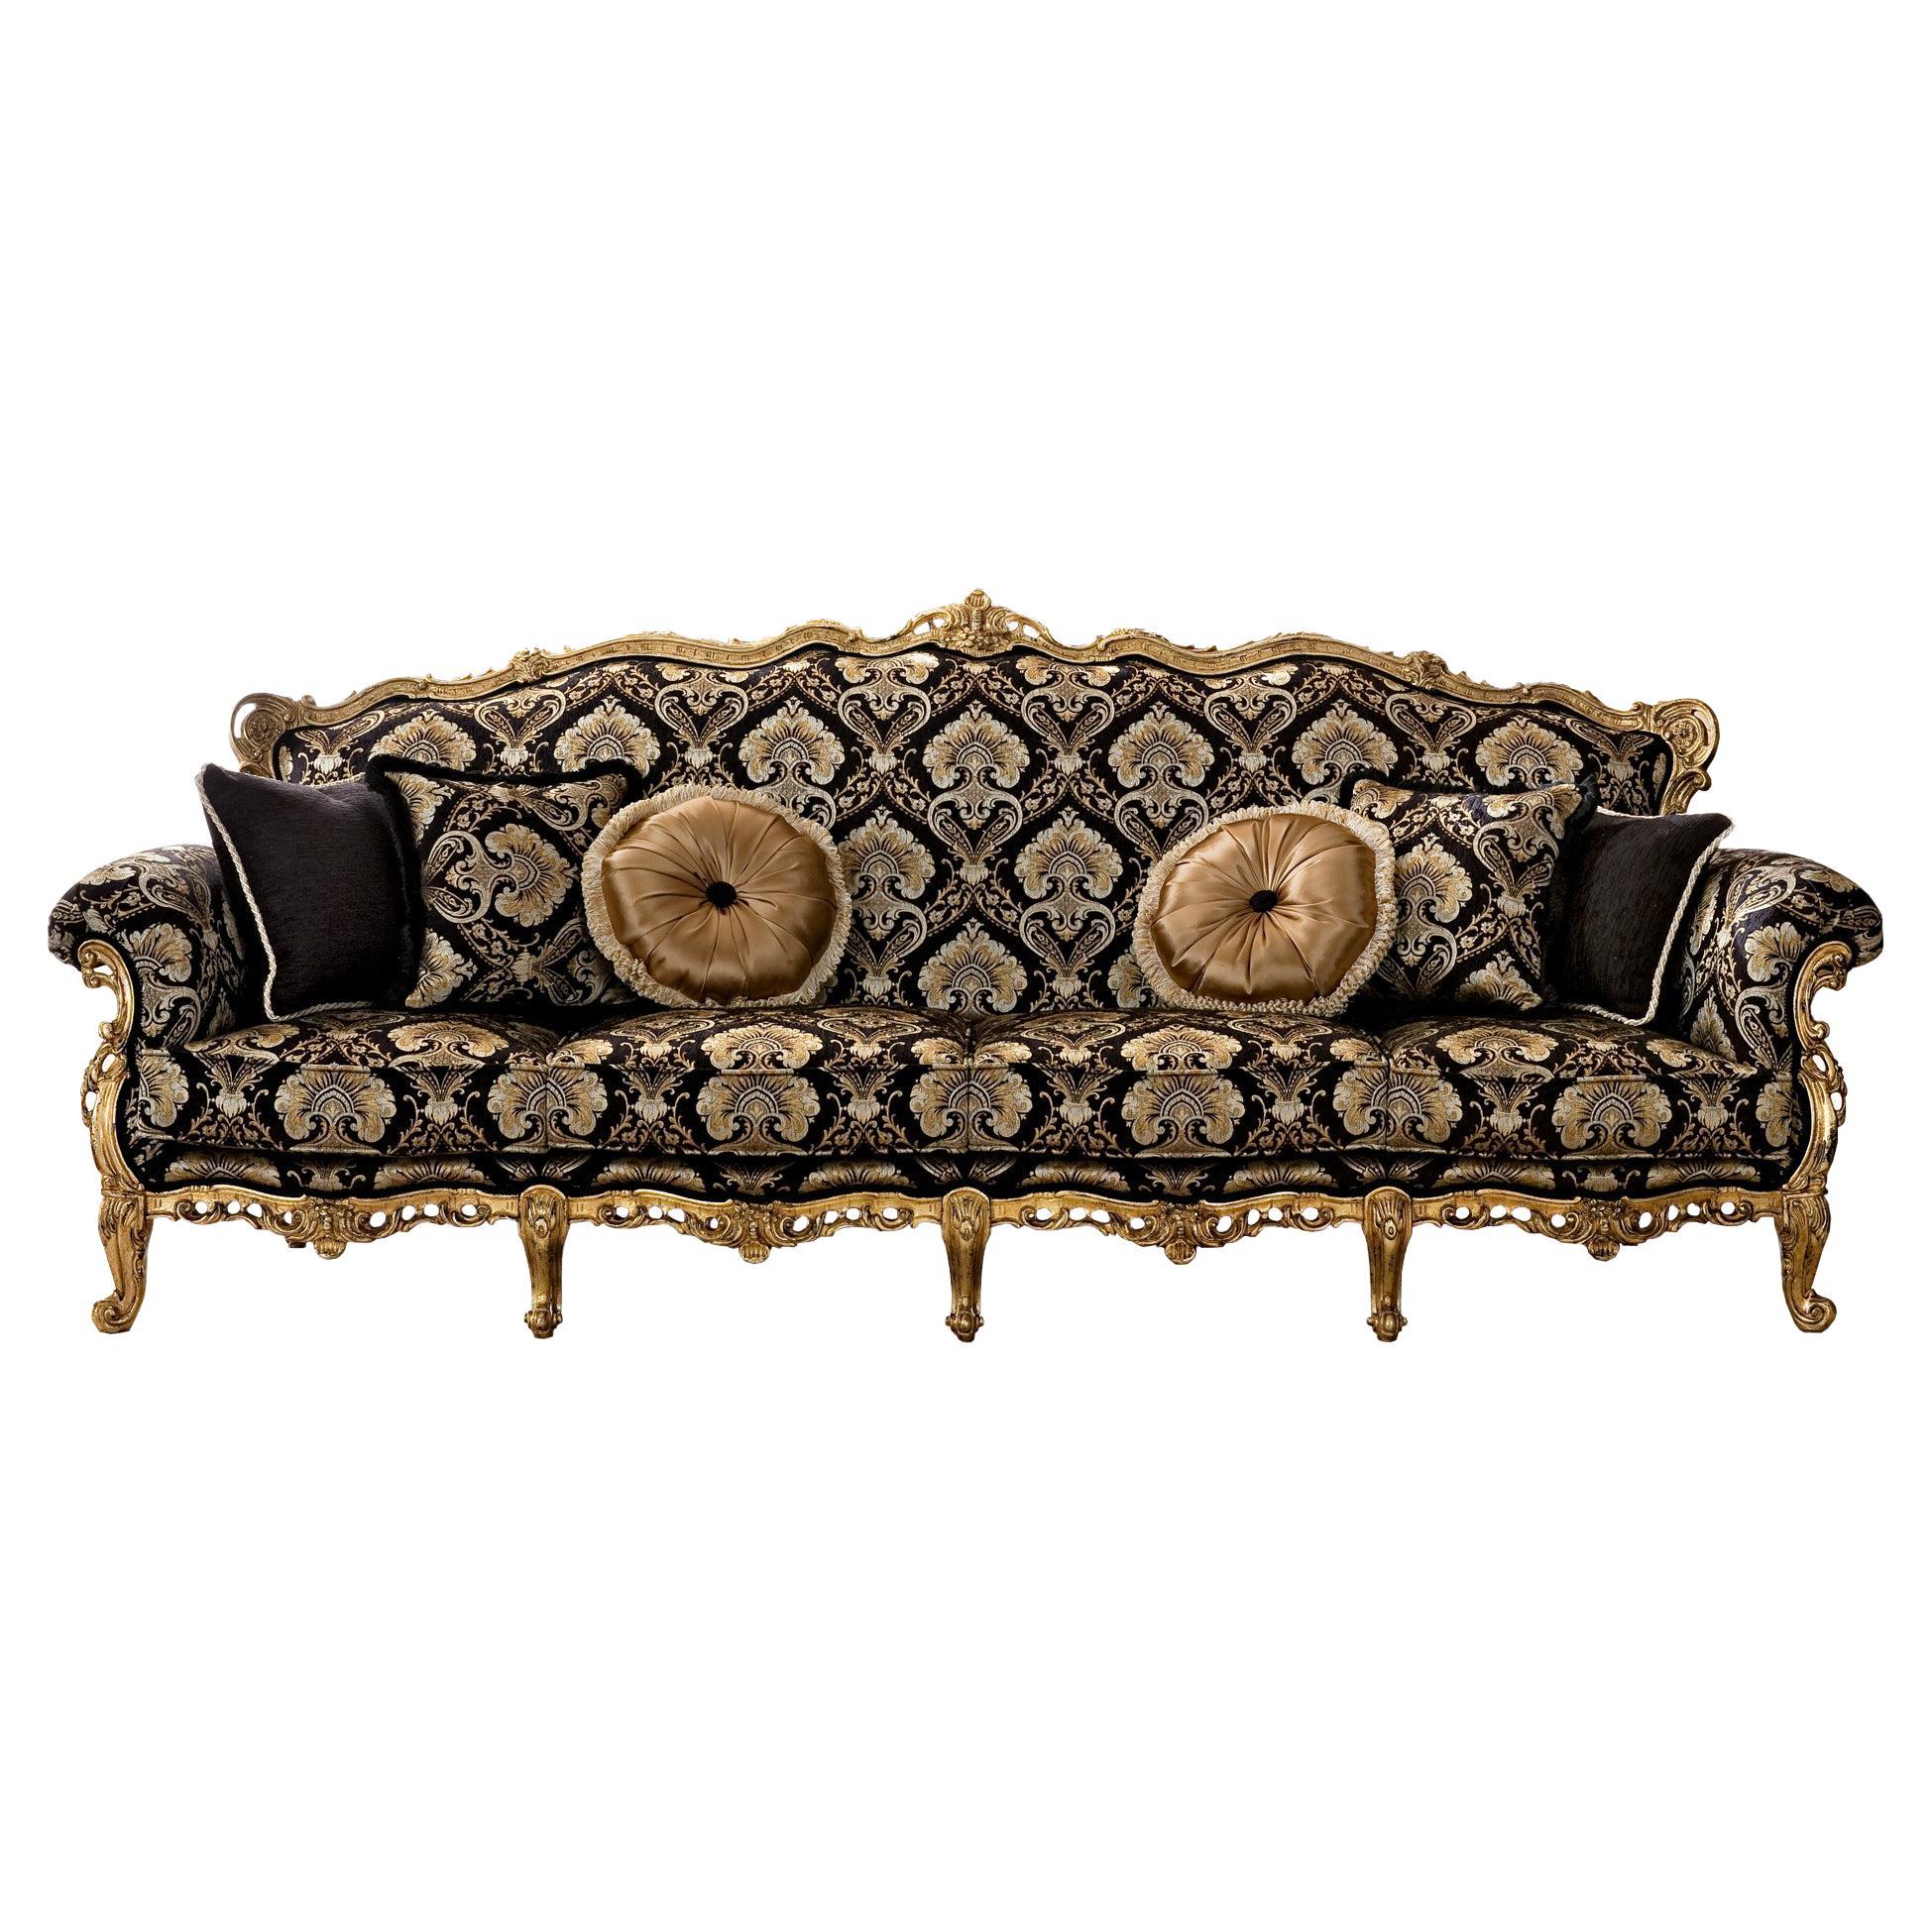 Grand Barock-Sofa mit vier Sitzern aus massivem Holz und patiniertem Blattgold